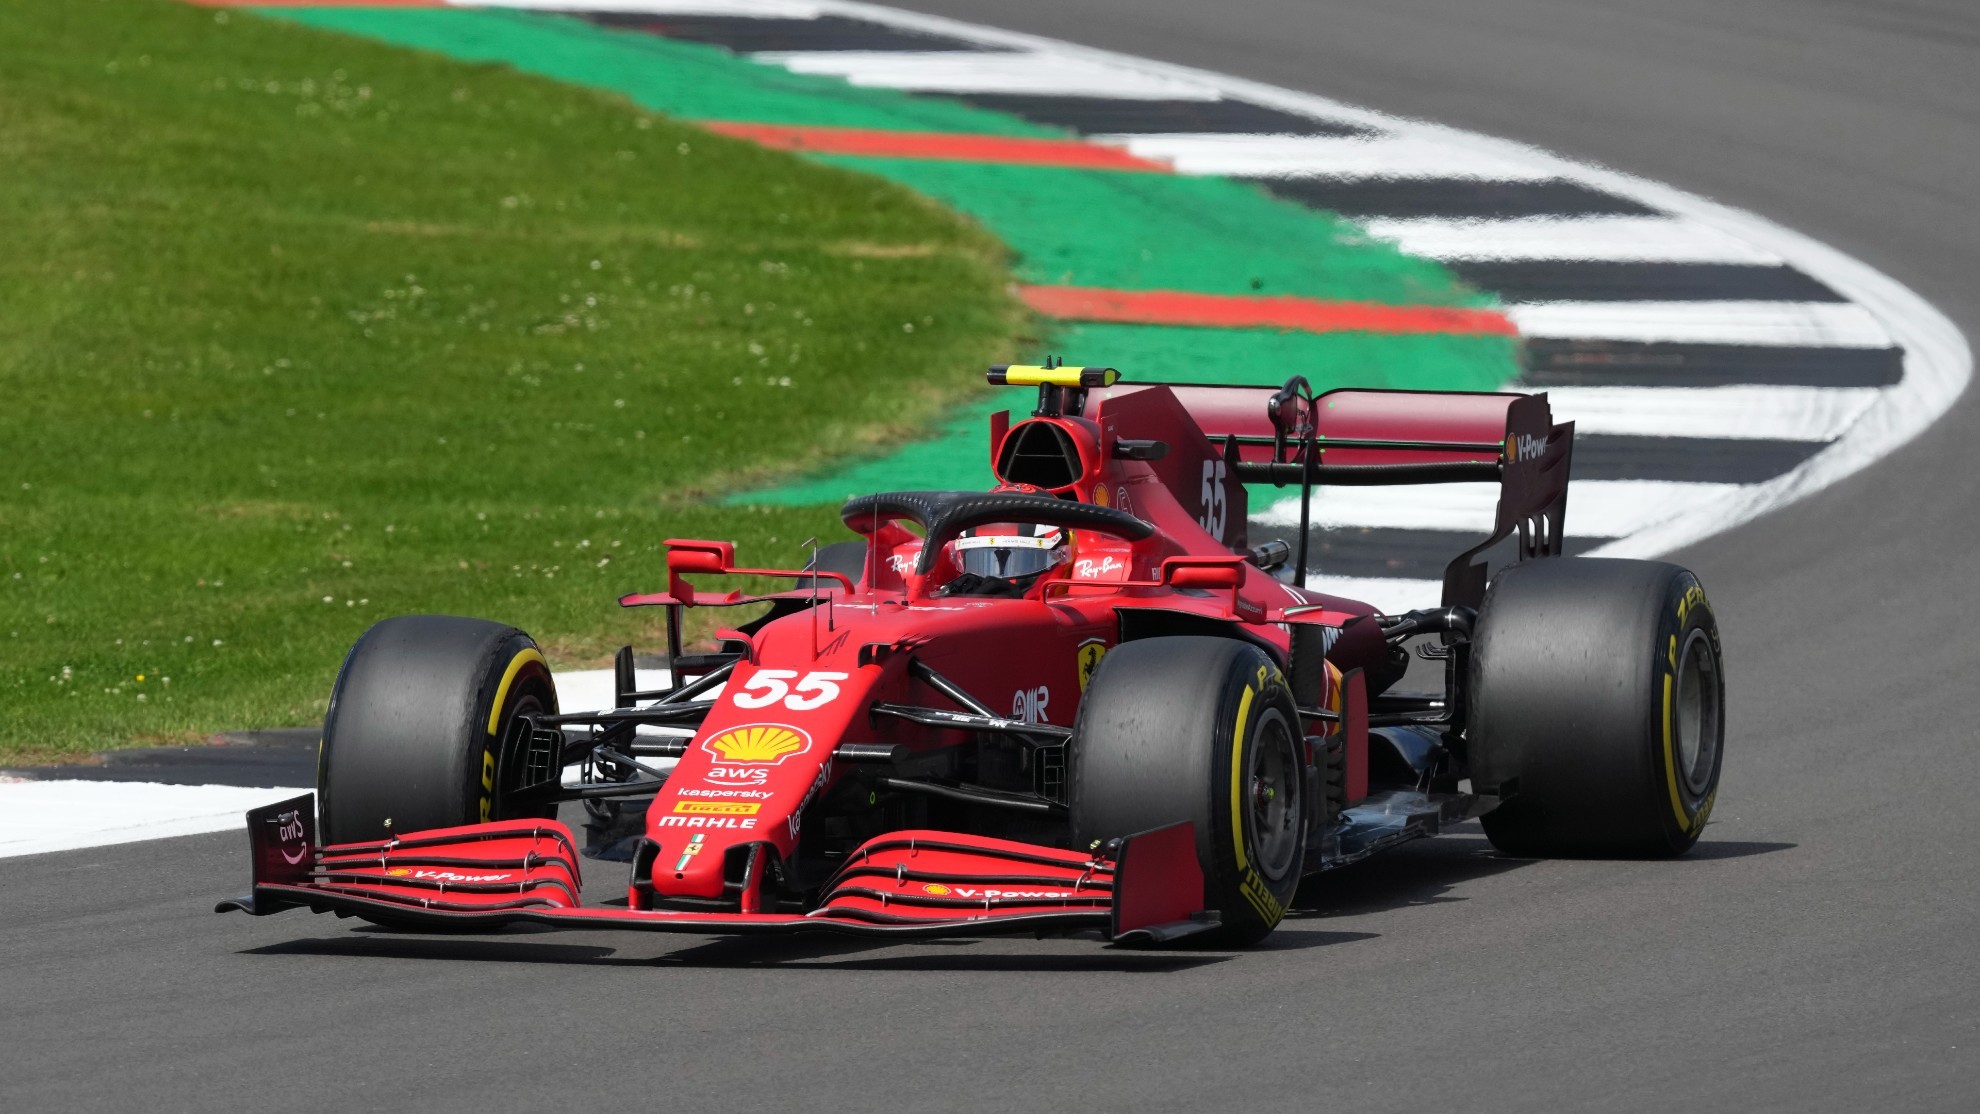 Carlos Sainz subido en su Ferrari